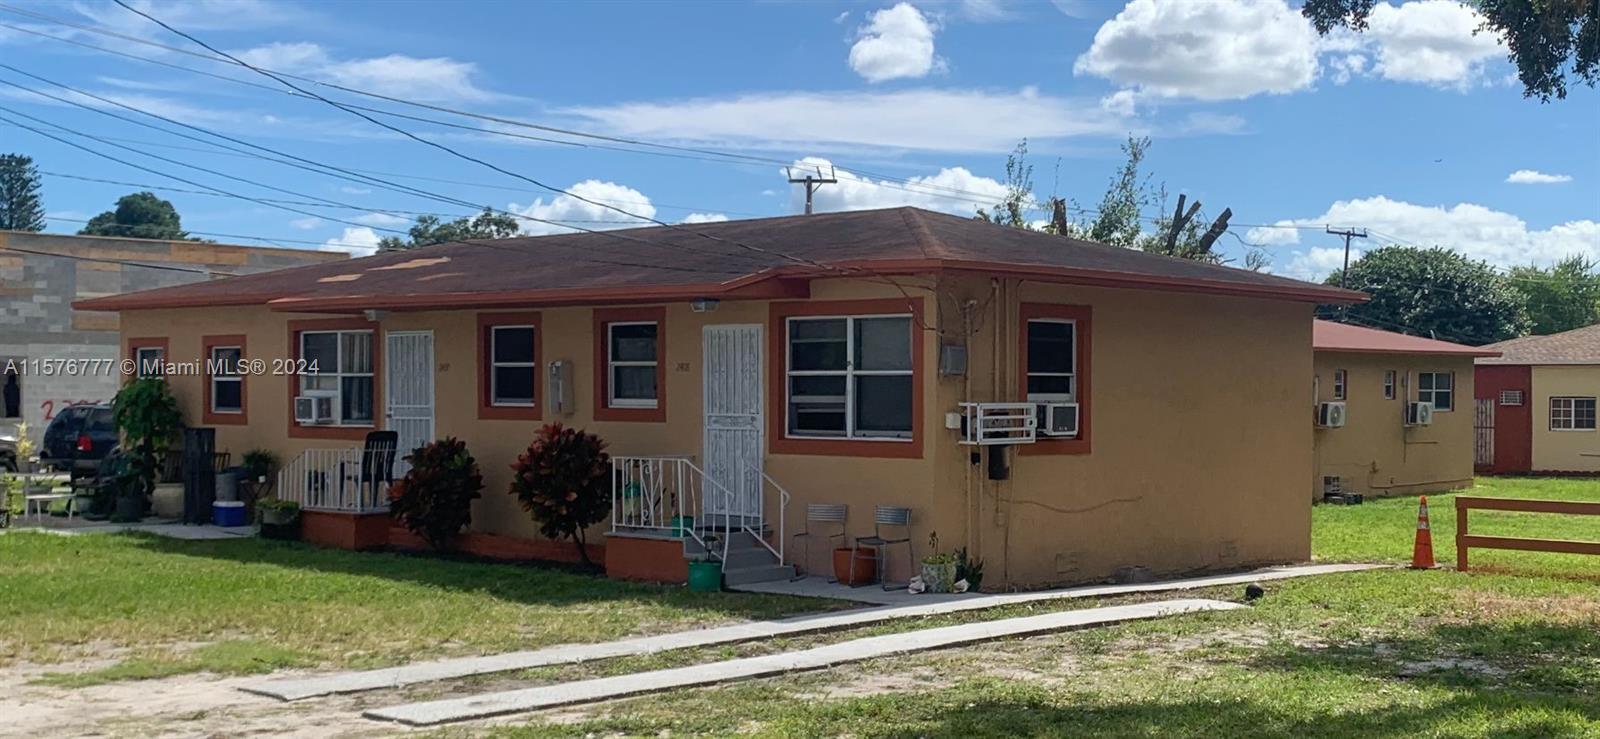 Rental Property at 2400 Nw 61st St, Miami, Broward County, Florida -  - $1,199,000 MO.